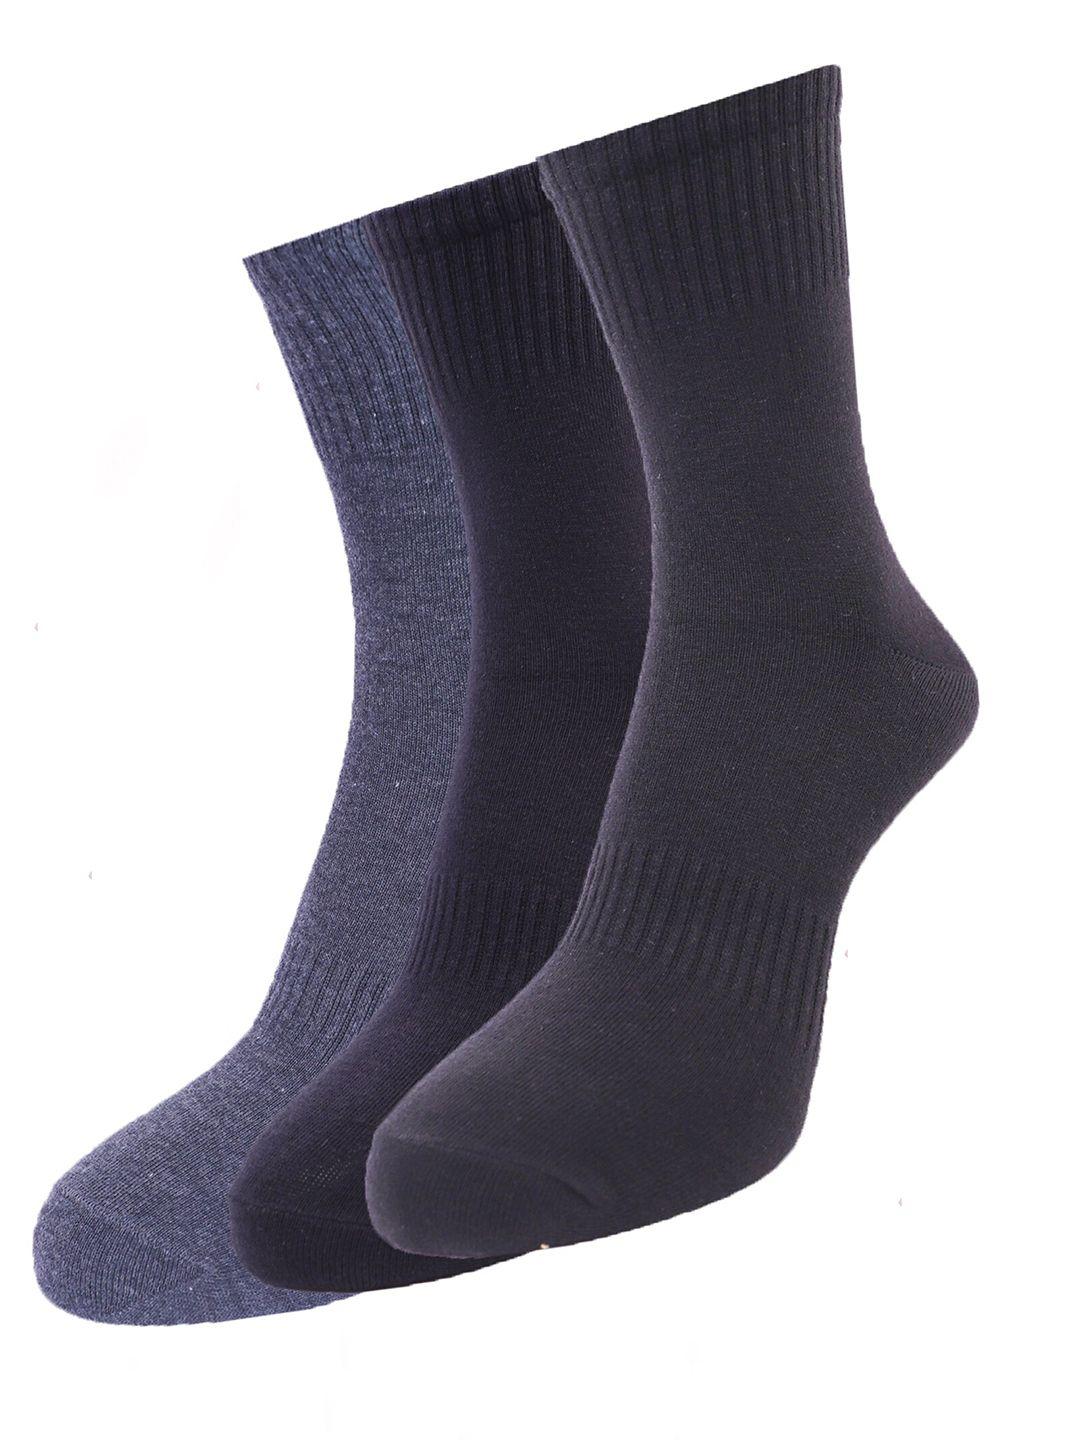 dollar men pack of 3 assorted ankle-length socks